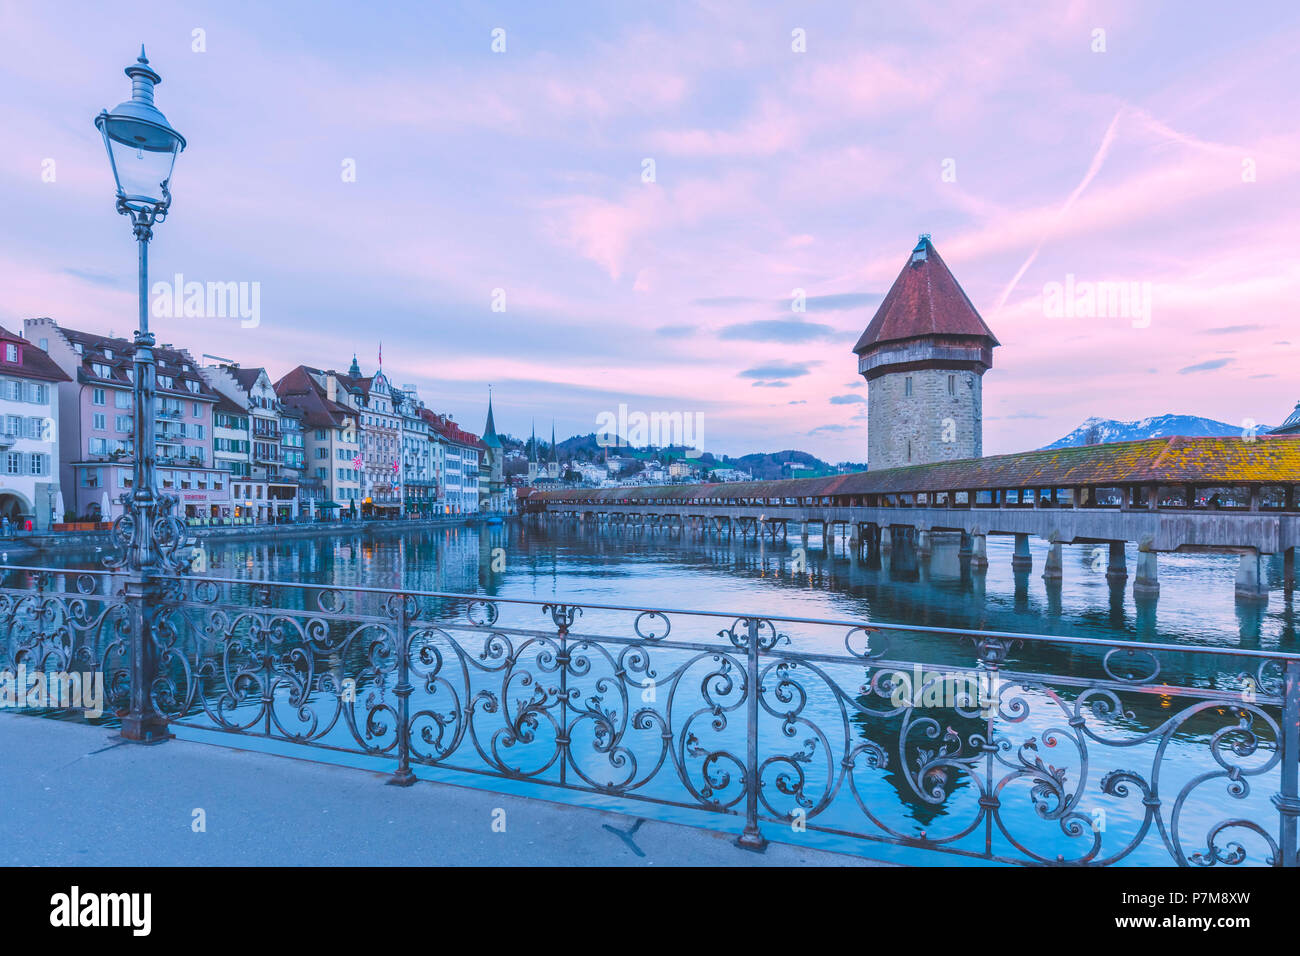 Ville de Lucerne et Lachapel Bridge au lever du soleil, Lucerne, Suisse Banque D'Images